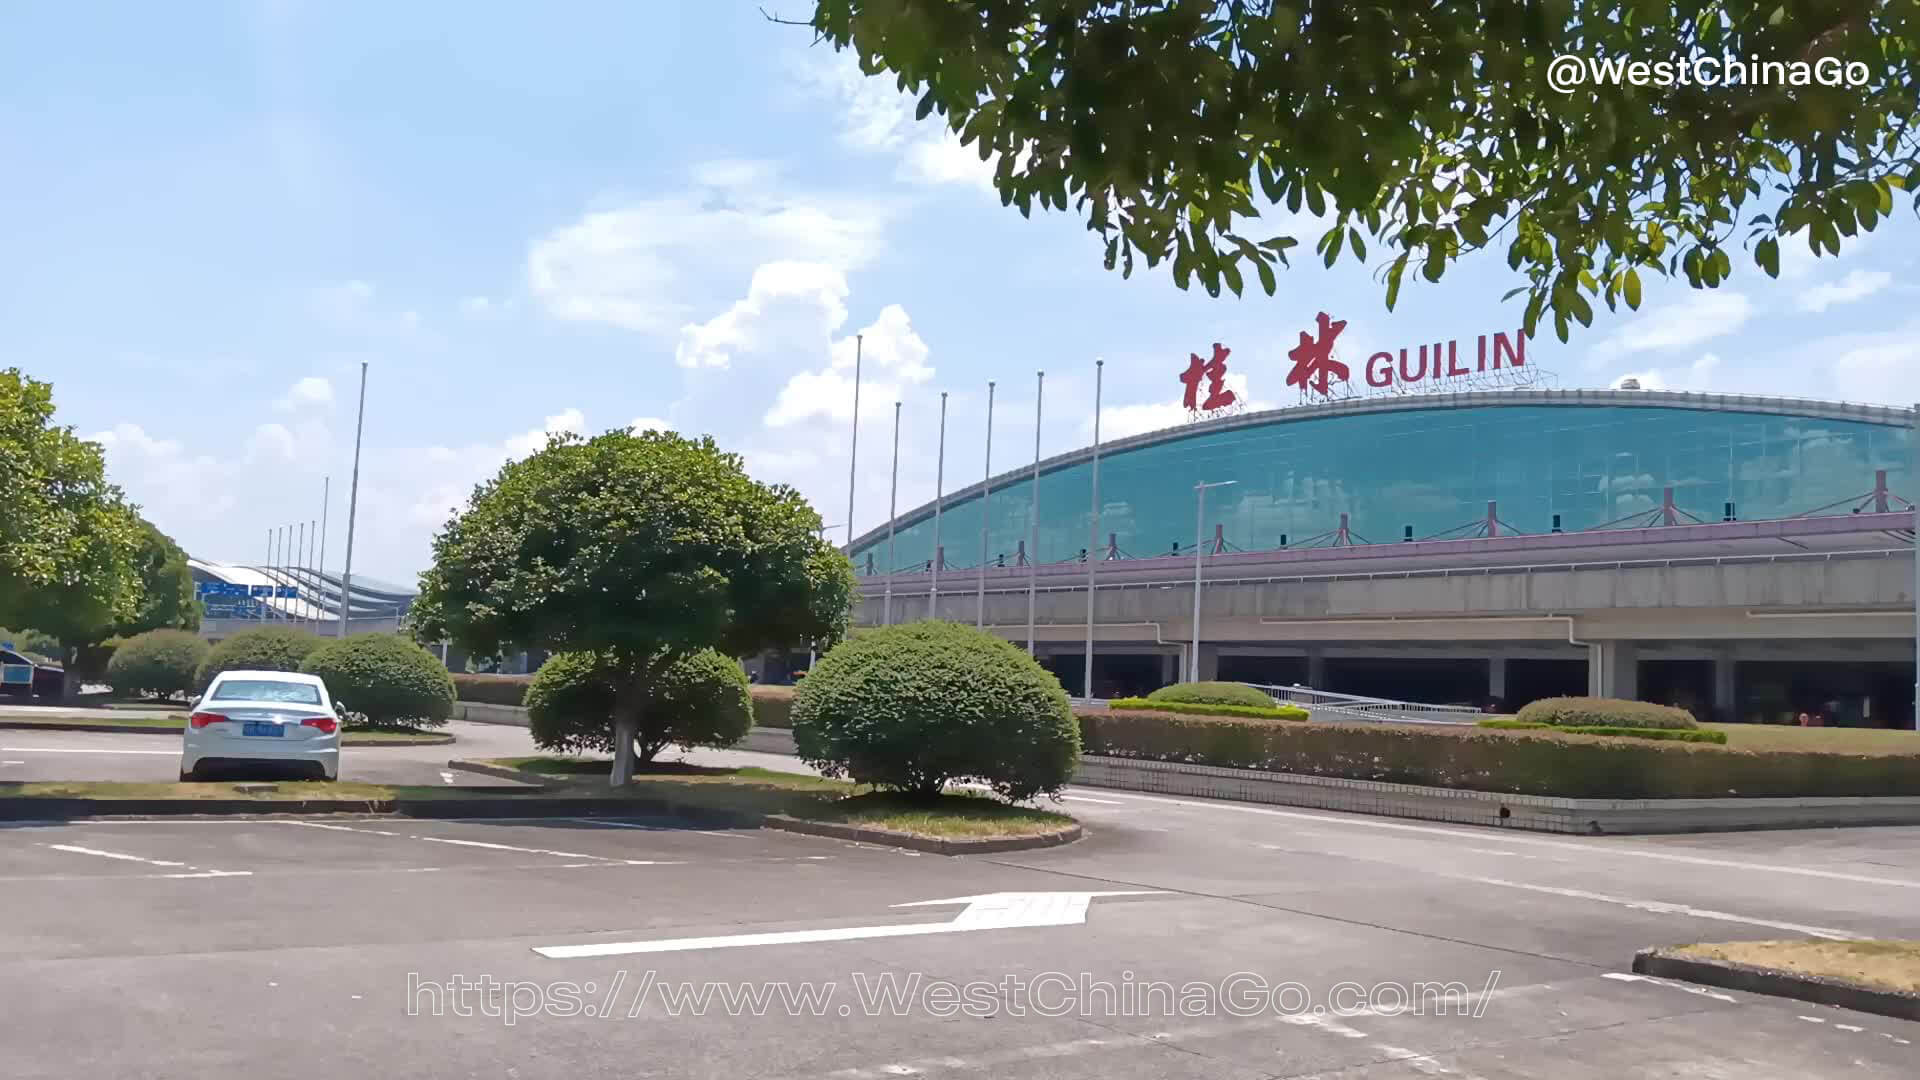 guilin liangjiang international airport